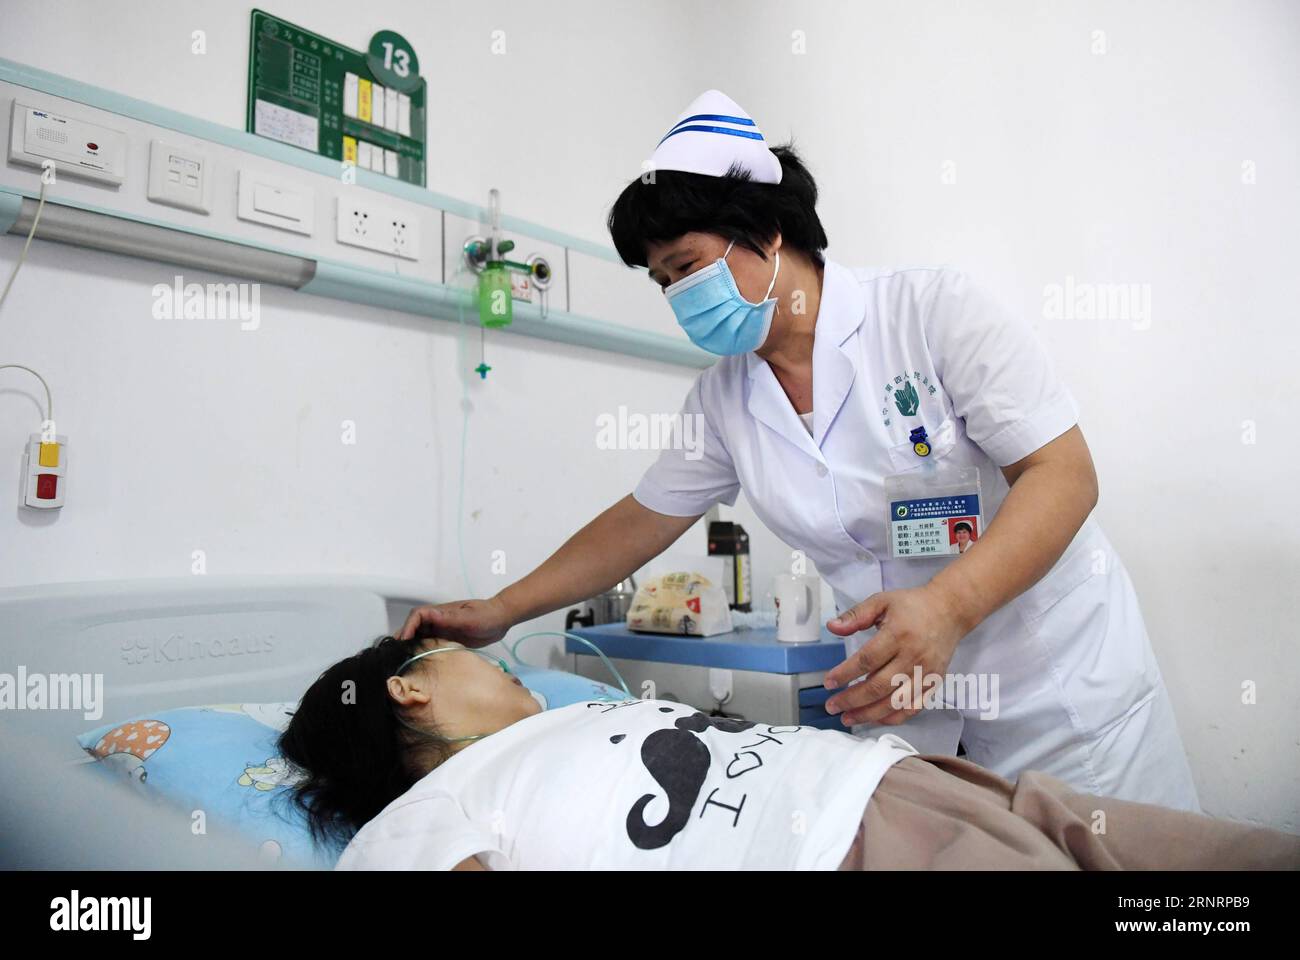 (171012) -- PECHINO, 12 ottobre 2017 -- Du Liqun, infermiera della sezione HIV/AIDS, effettua un controllo medico per un paziente presso il Fourth People's Hospital di Nanning a Nanning, capitale della regione autonoma del Guangxi Zhuang della Cina meridionale, 18 settembre 2017. Du, in qualità di staff medico per il controllo e la cura dell'HIV/AIDS da più di un decennio, ha ricevuto la Florence Nightingale Medal per i suoi eccezionali contributi all'assistenza sanitaria nel 2015. Ora è stata eletta come delegata per partecipare al 19° Congresso Nazionale del Partito Comunista Cinese (CPC) a Pechino dal 18 ottobre. In circa un anno, un totale di 2.287 delega Foto Stock